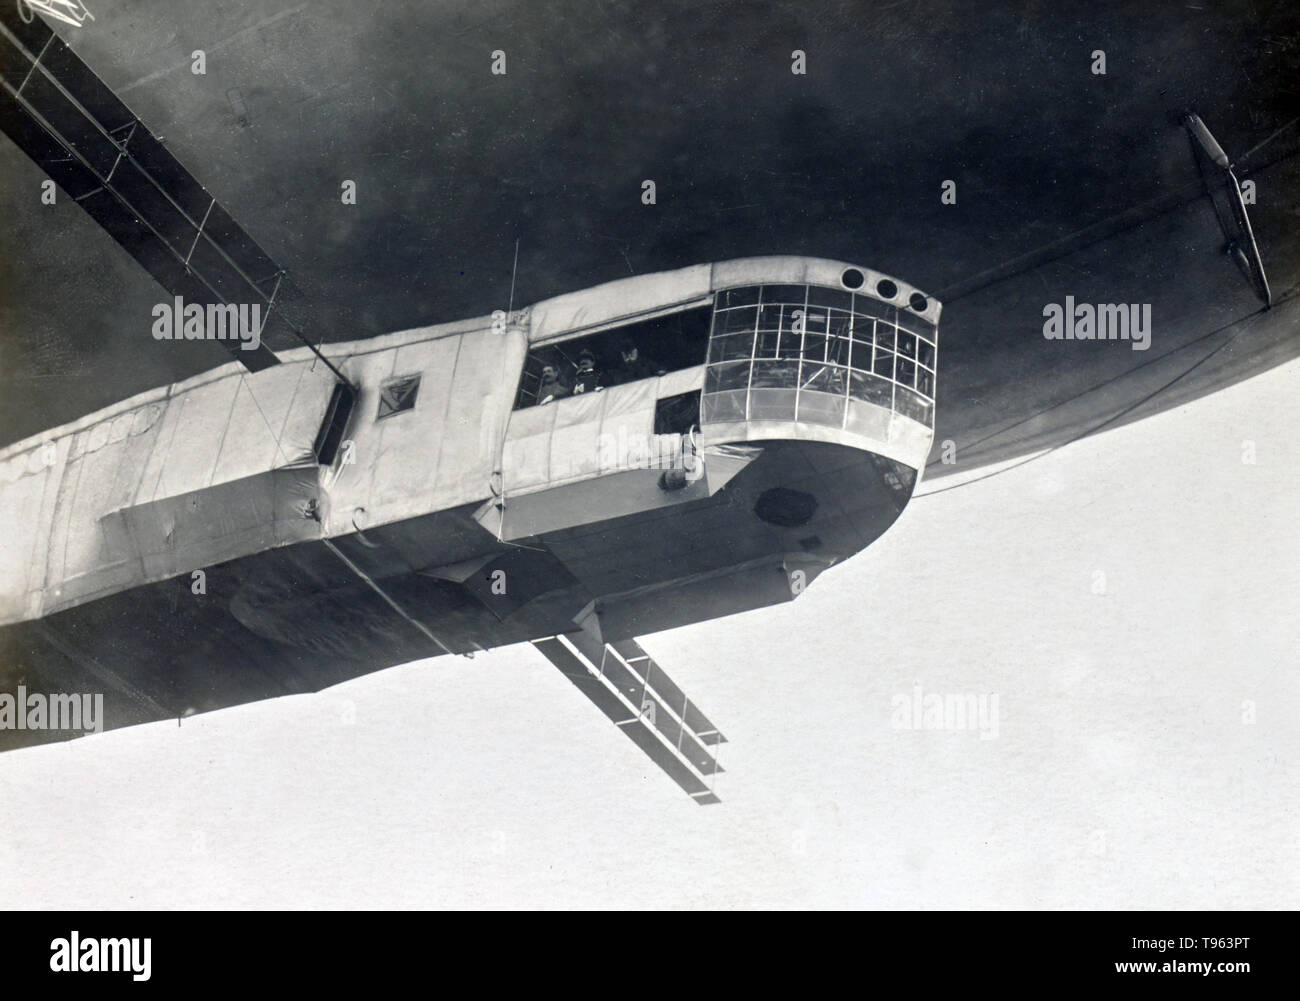 View of Blimp's Gondola. Fedele Azari (Italian, 1895 - 1930); Italy; 1914 - 1929; Gelatin silver print. Stock Photo